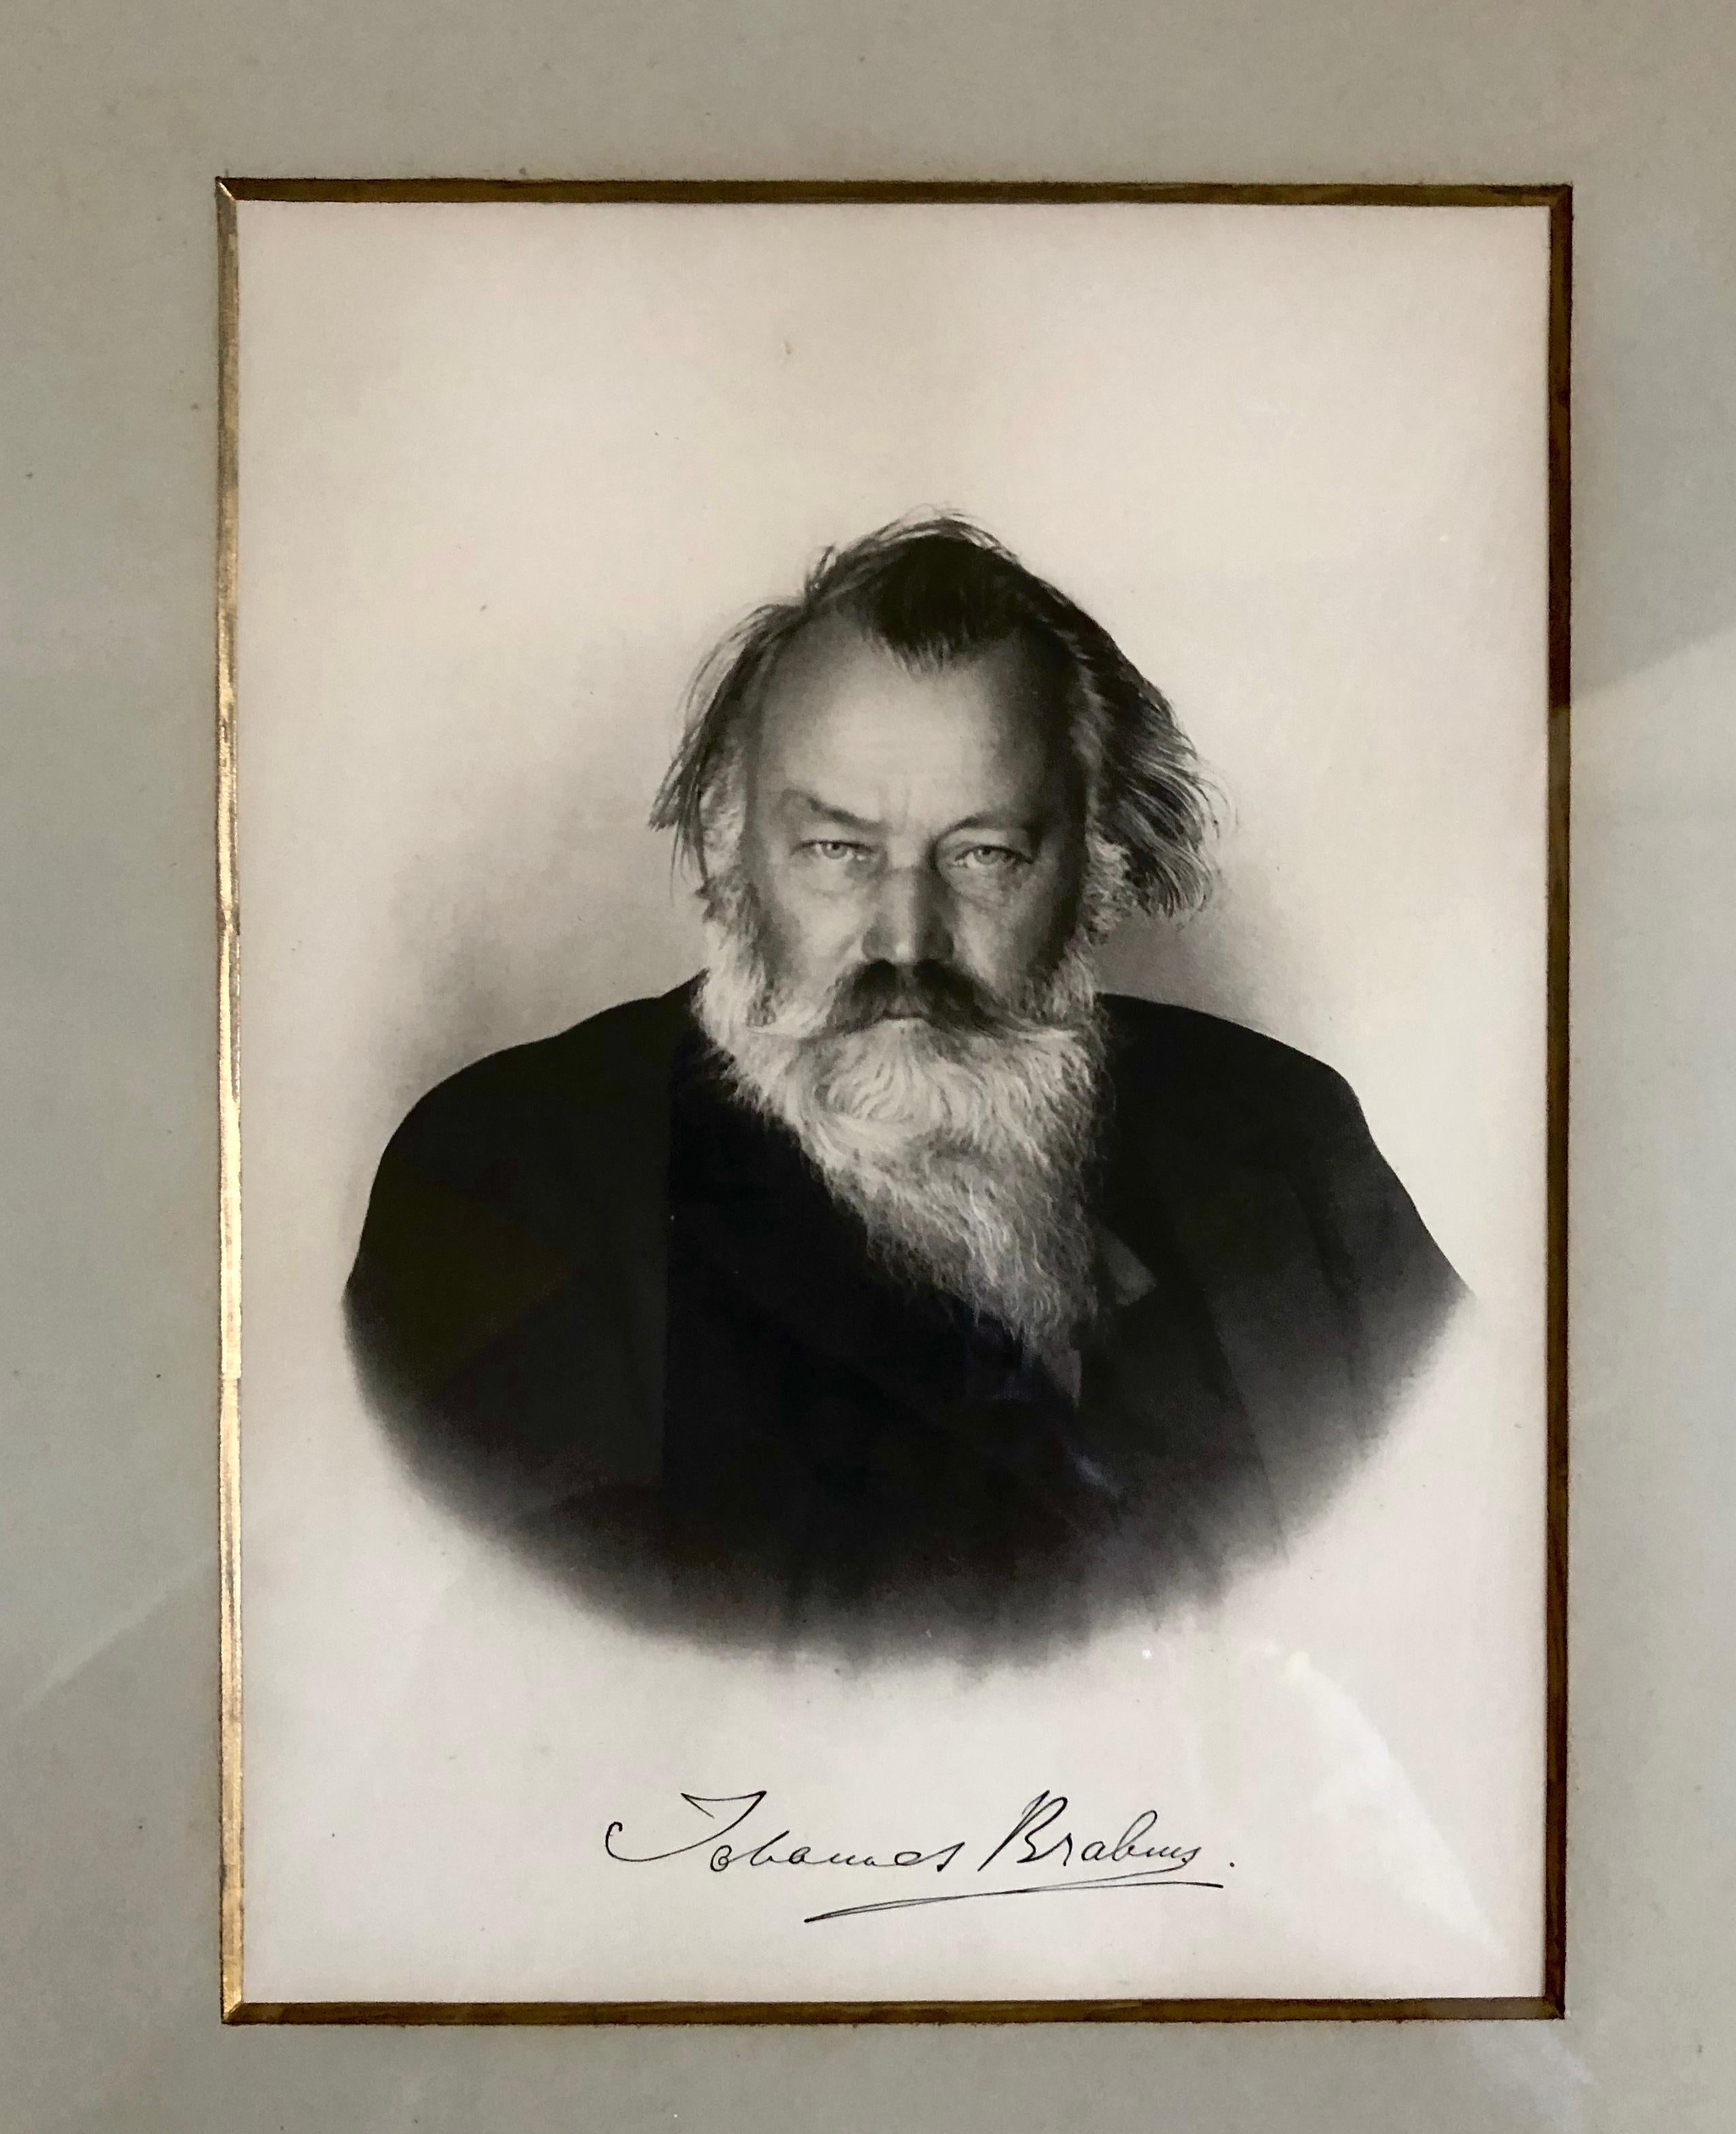 Johannes Brahms handschriftlich signiert in Tinte Gravur Radierung 1885 mit Original-Karton auf der Rückseite des Rahmens.
Johannes Brahms
Deutscher Komponist und Pianist, 1833-1897

